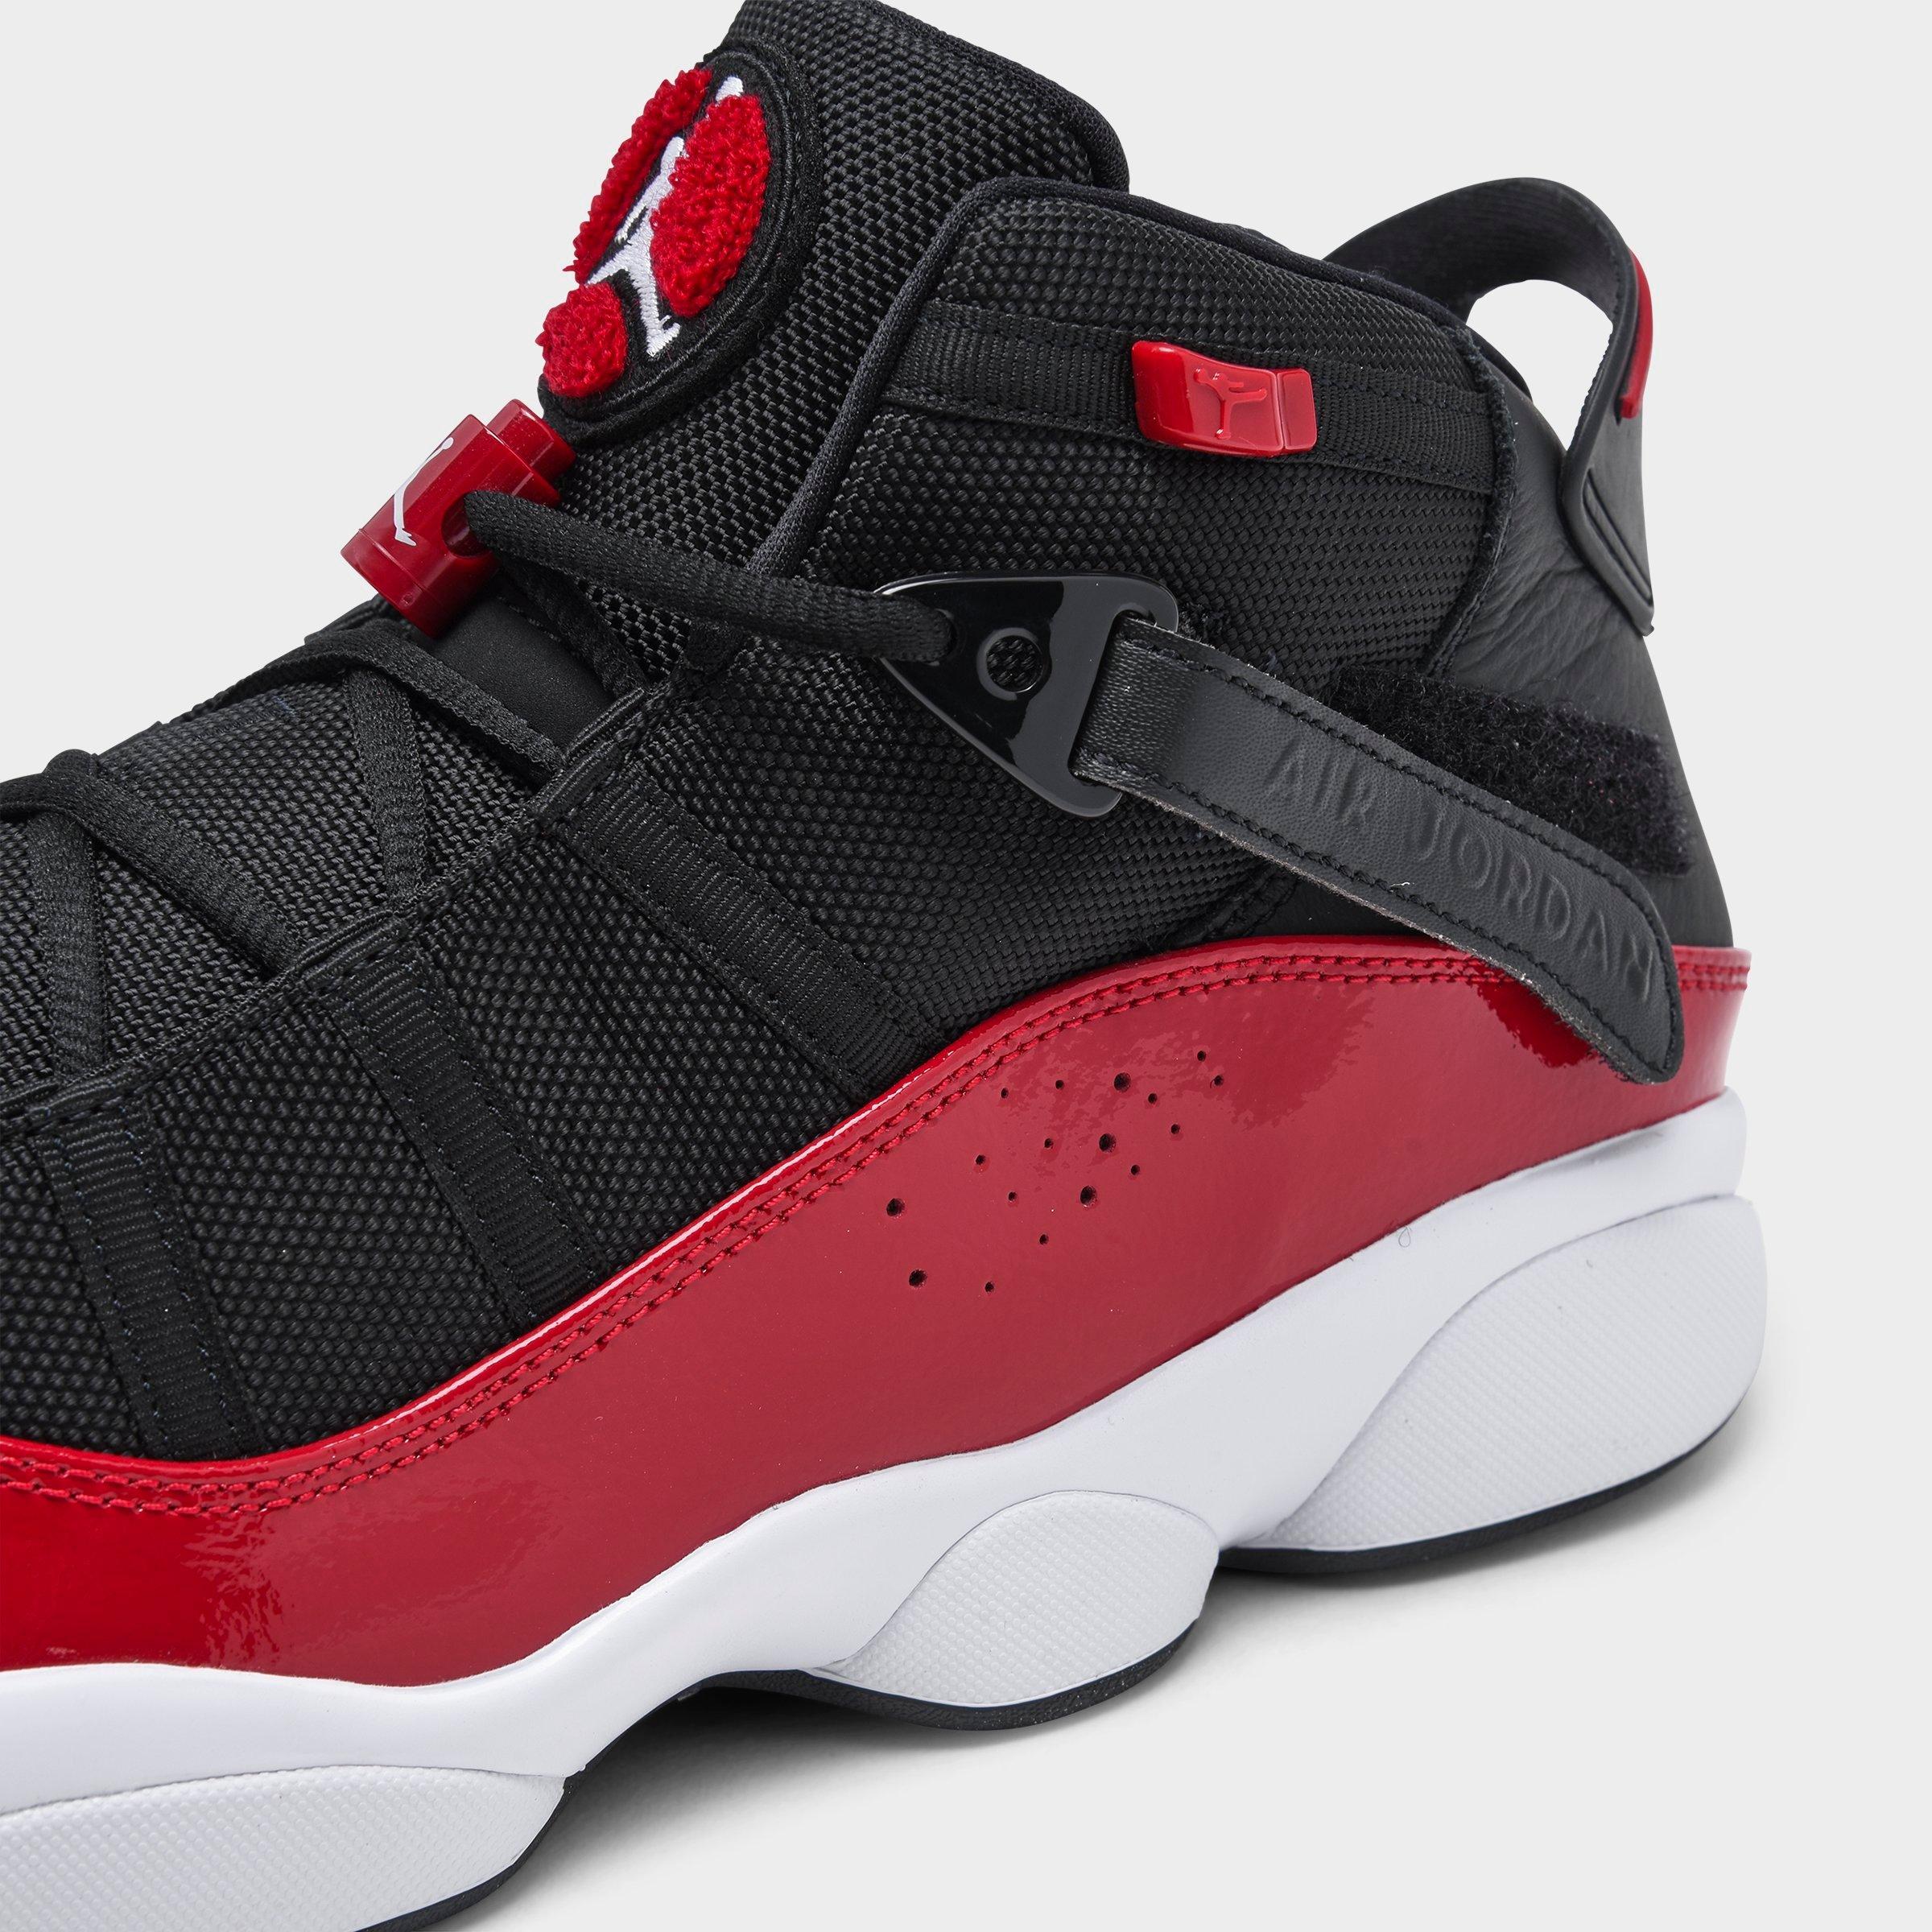 Air Jordan 6 Rings Basketball Shoes 